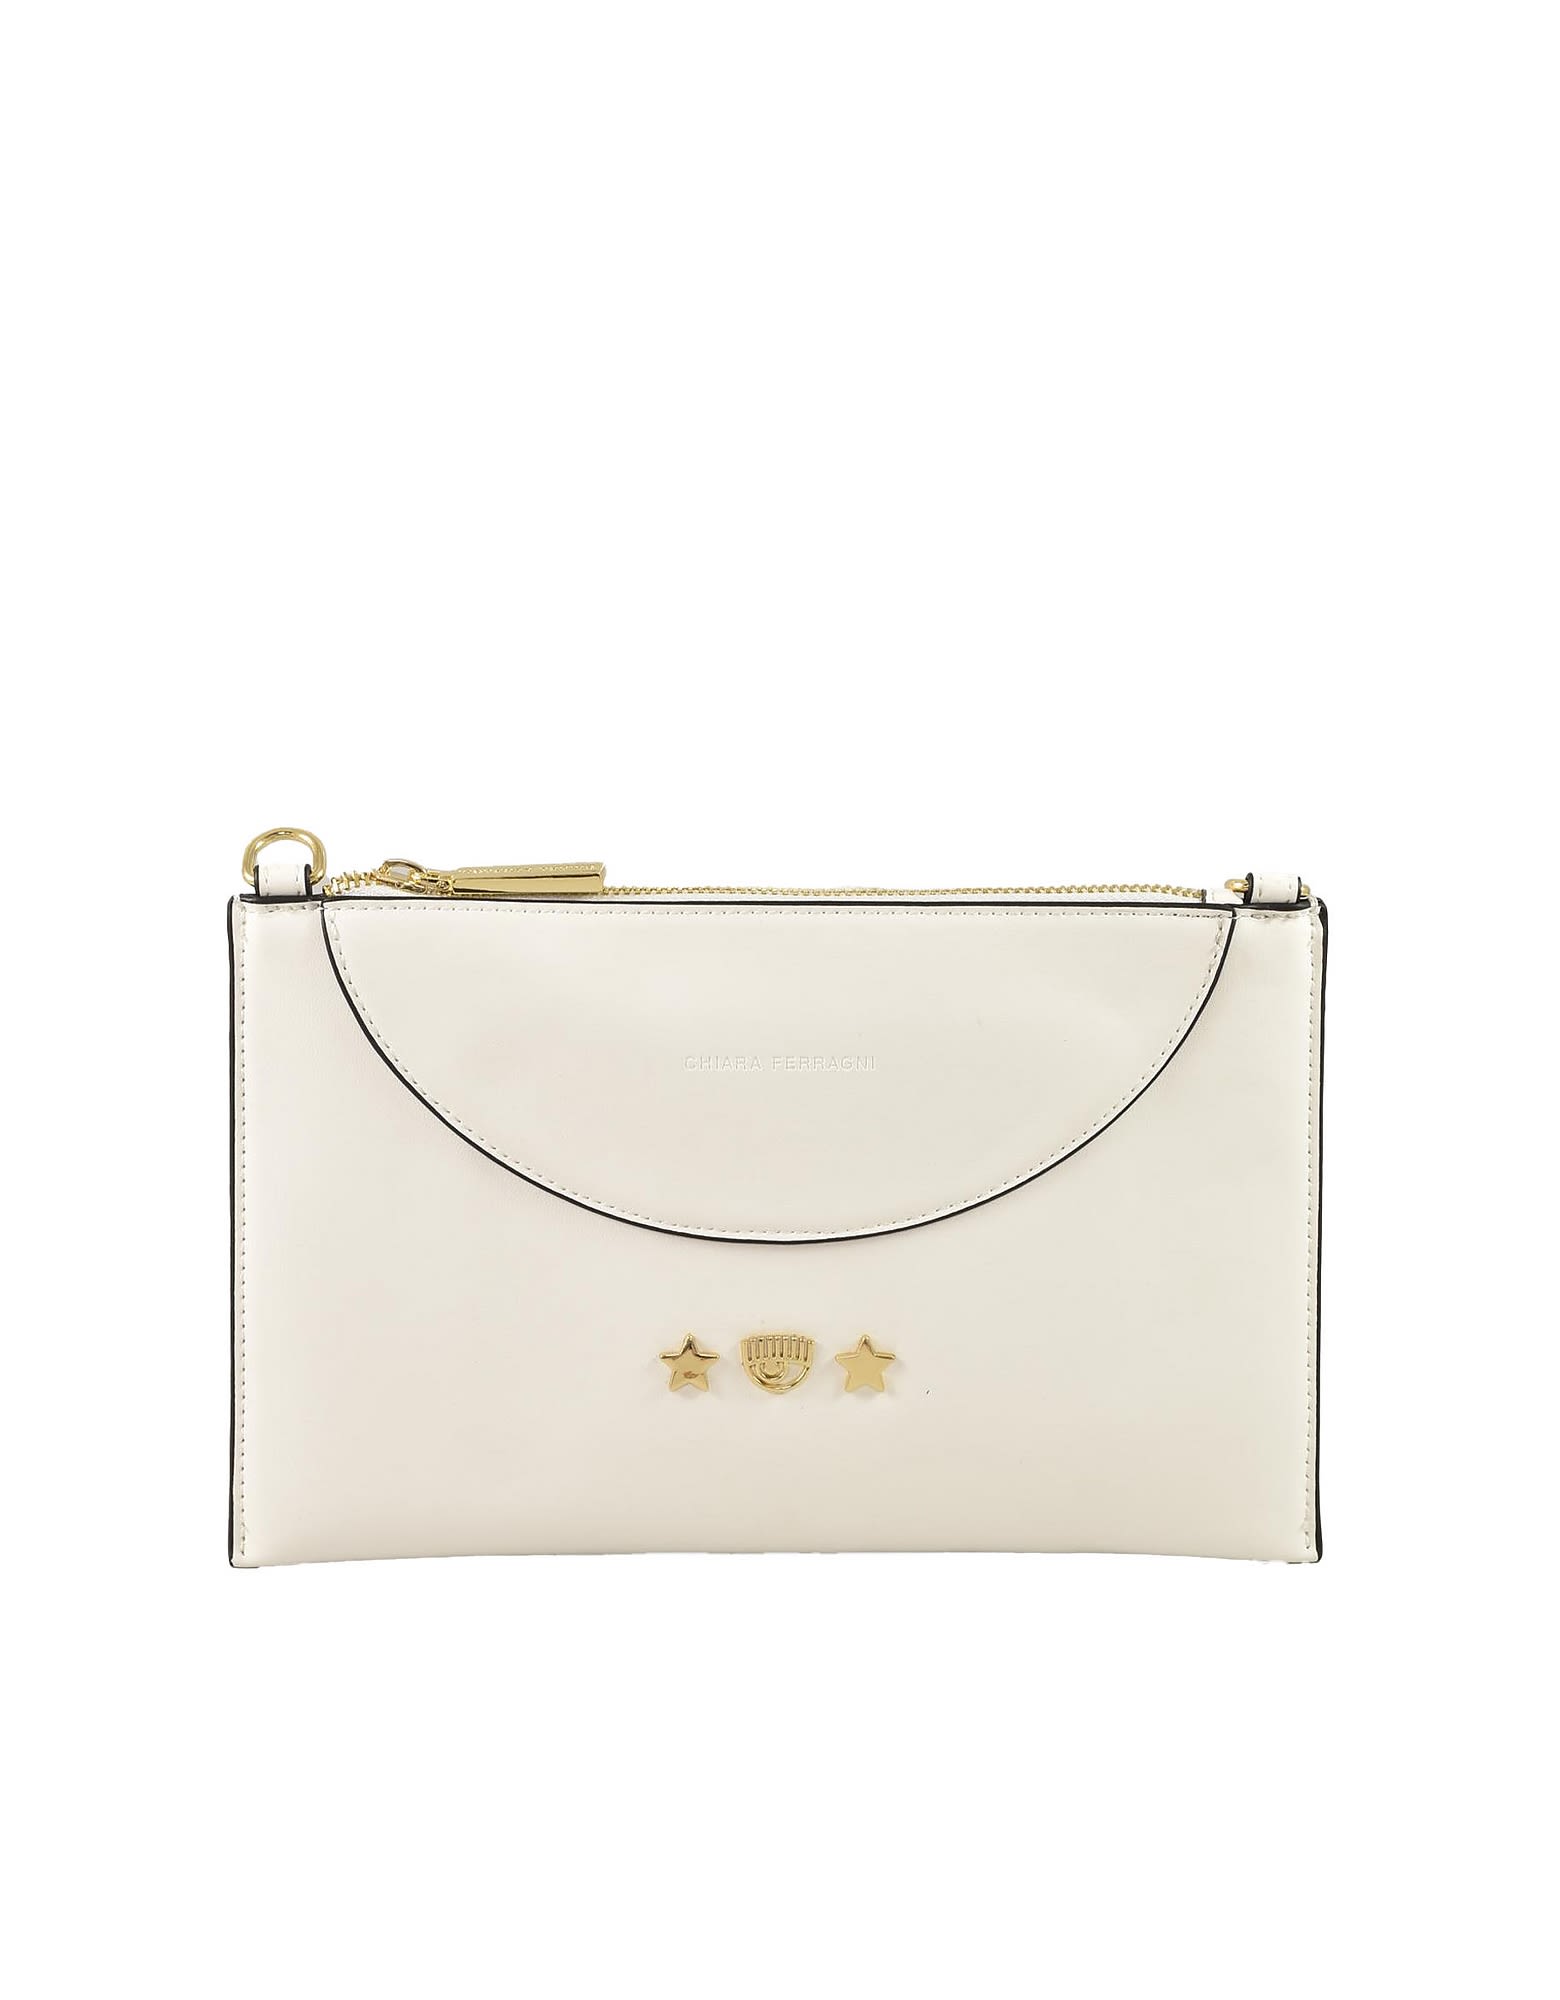 Chiara Ferragni Womens White Handbag